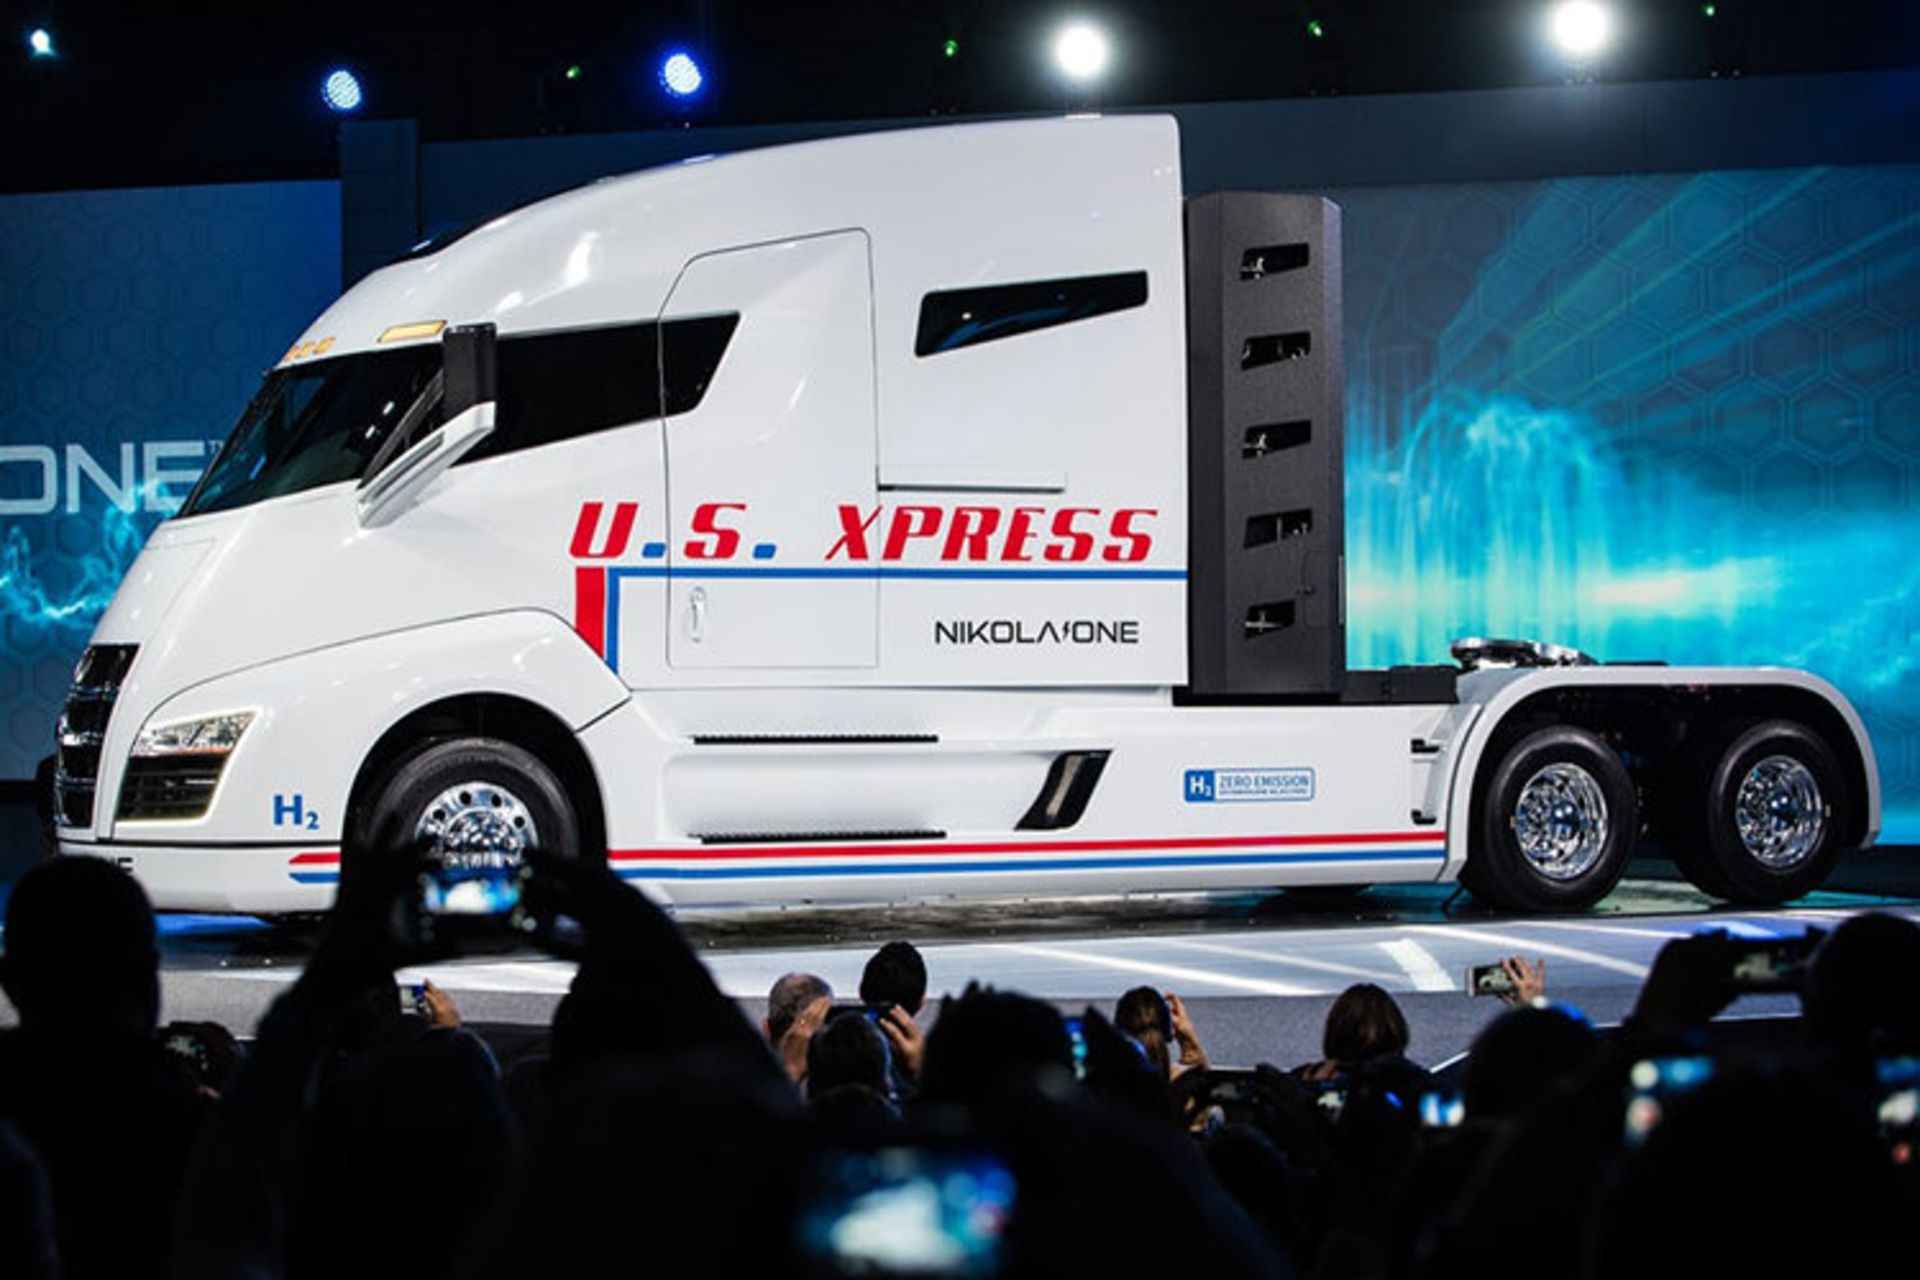 Nikola hydrogen truck / کامیون هیدروژنی نیکولا